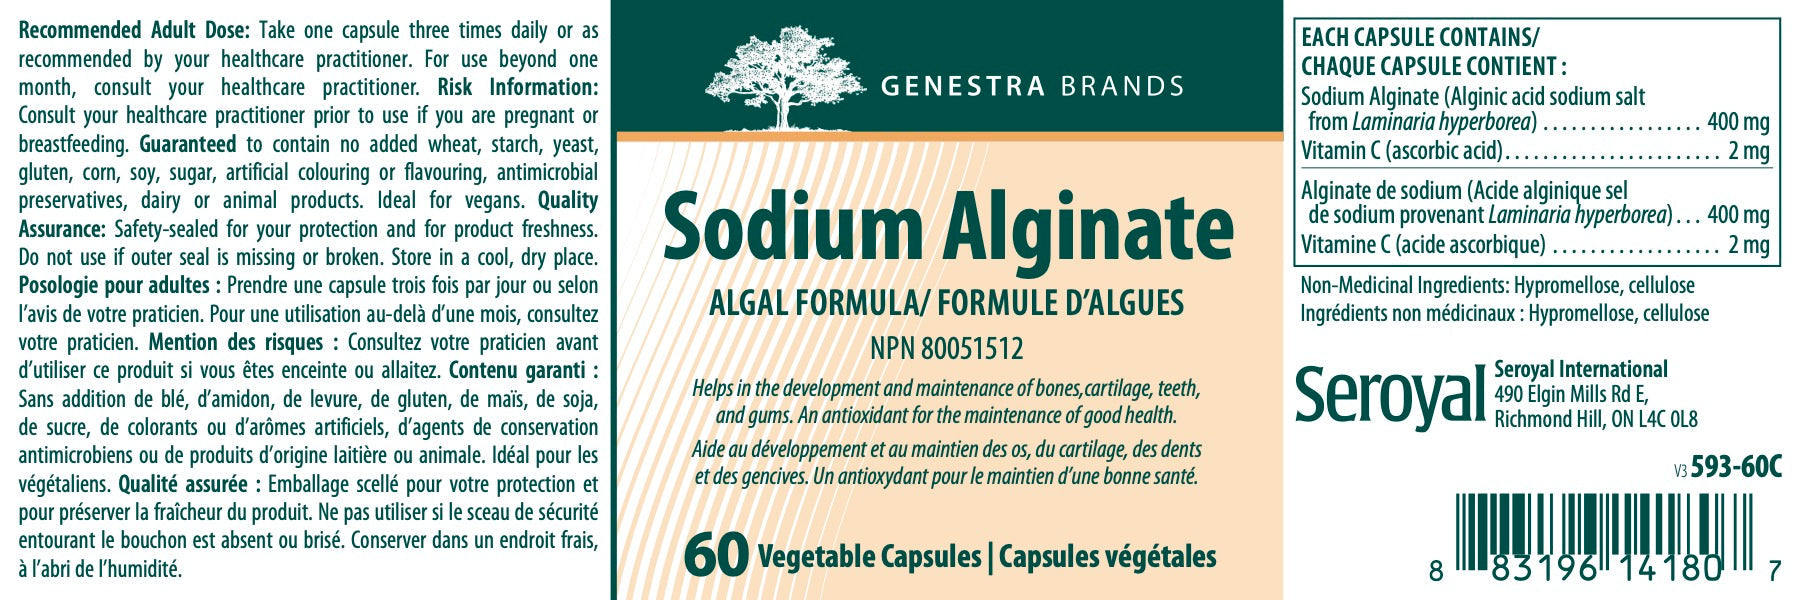 Sodium Alginate, Genestra